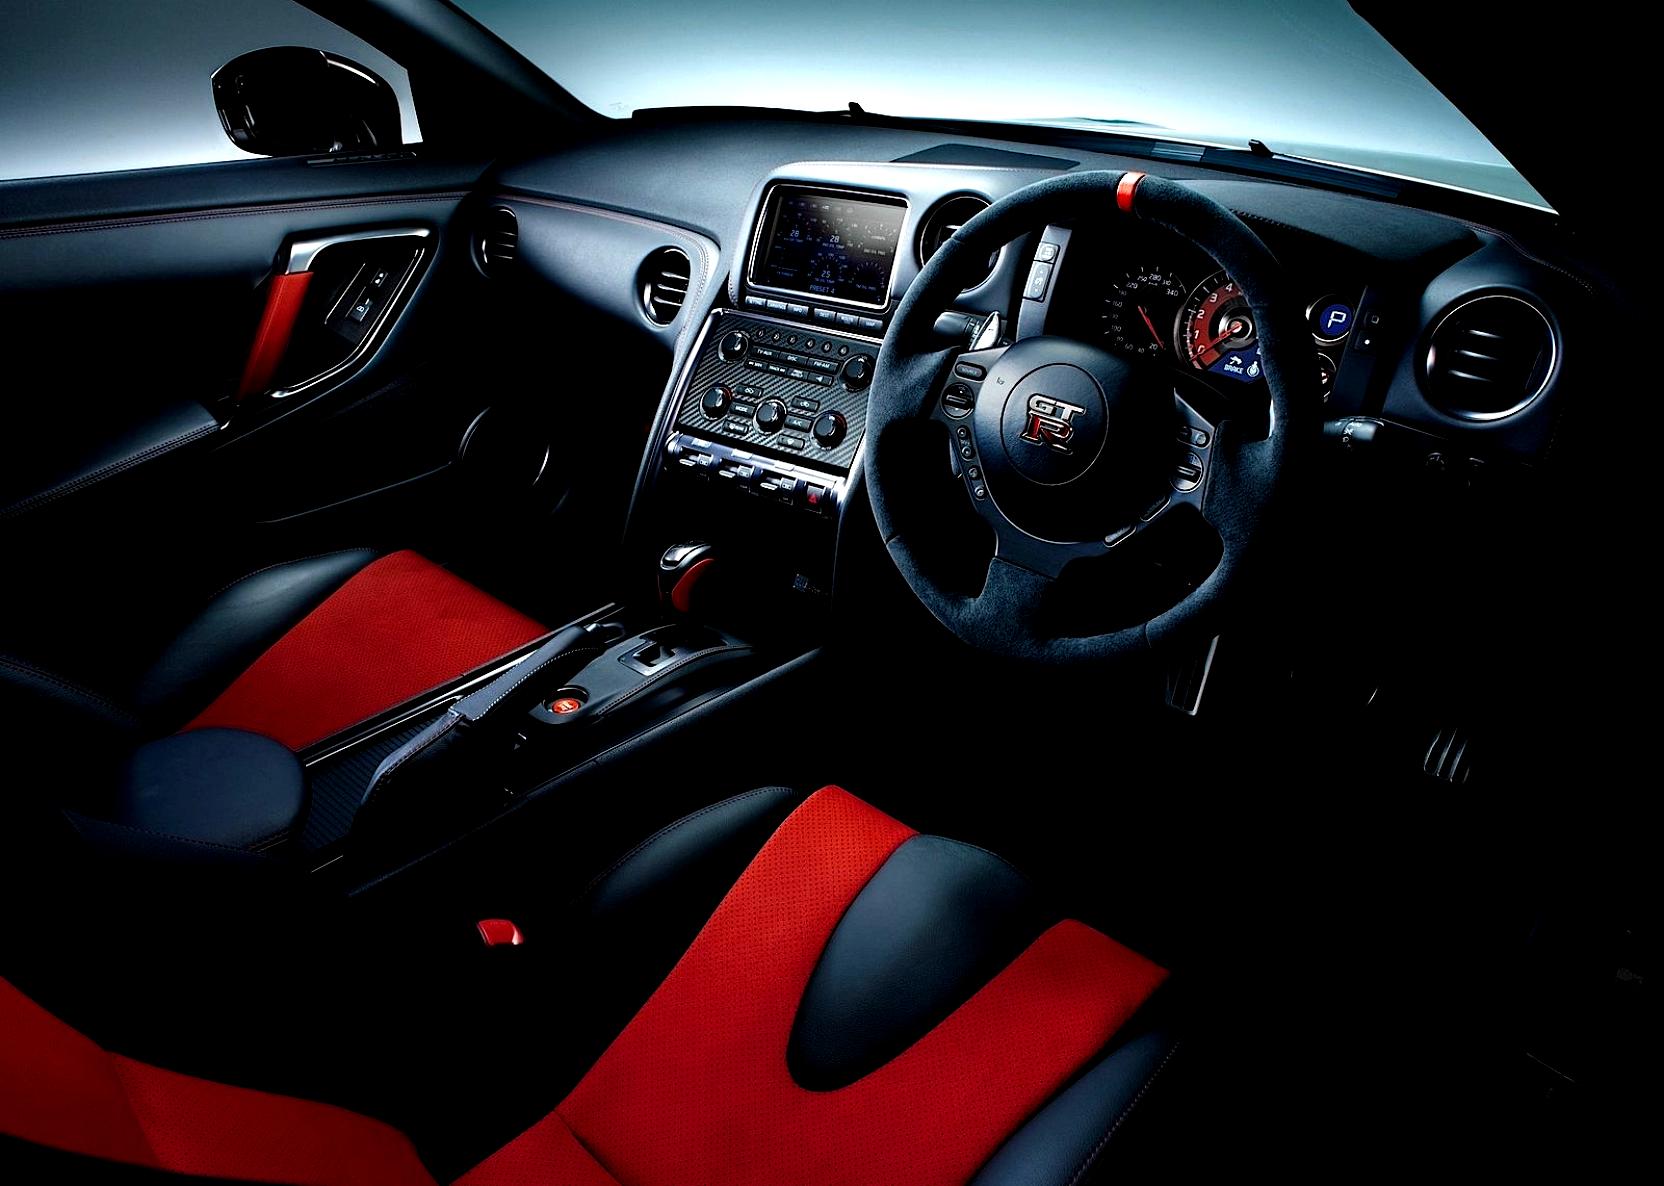 Nissan GT-R R35 Nismo 2014 #77